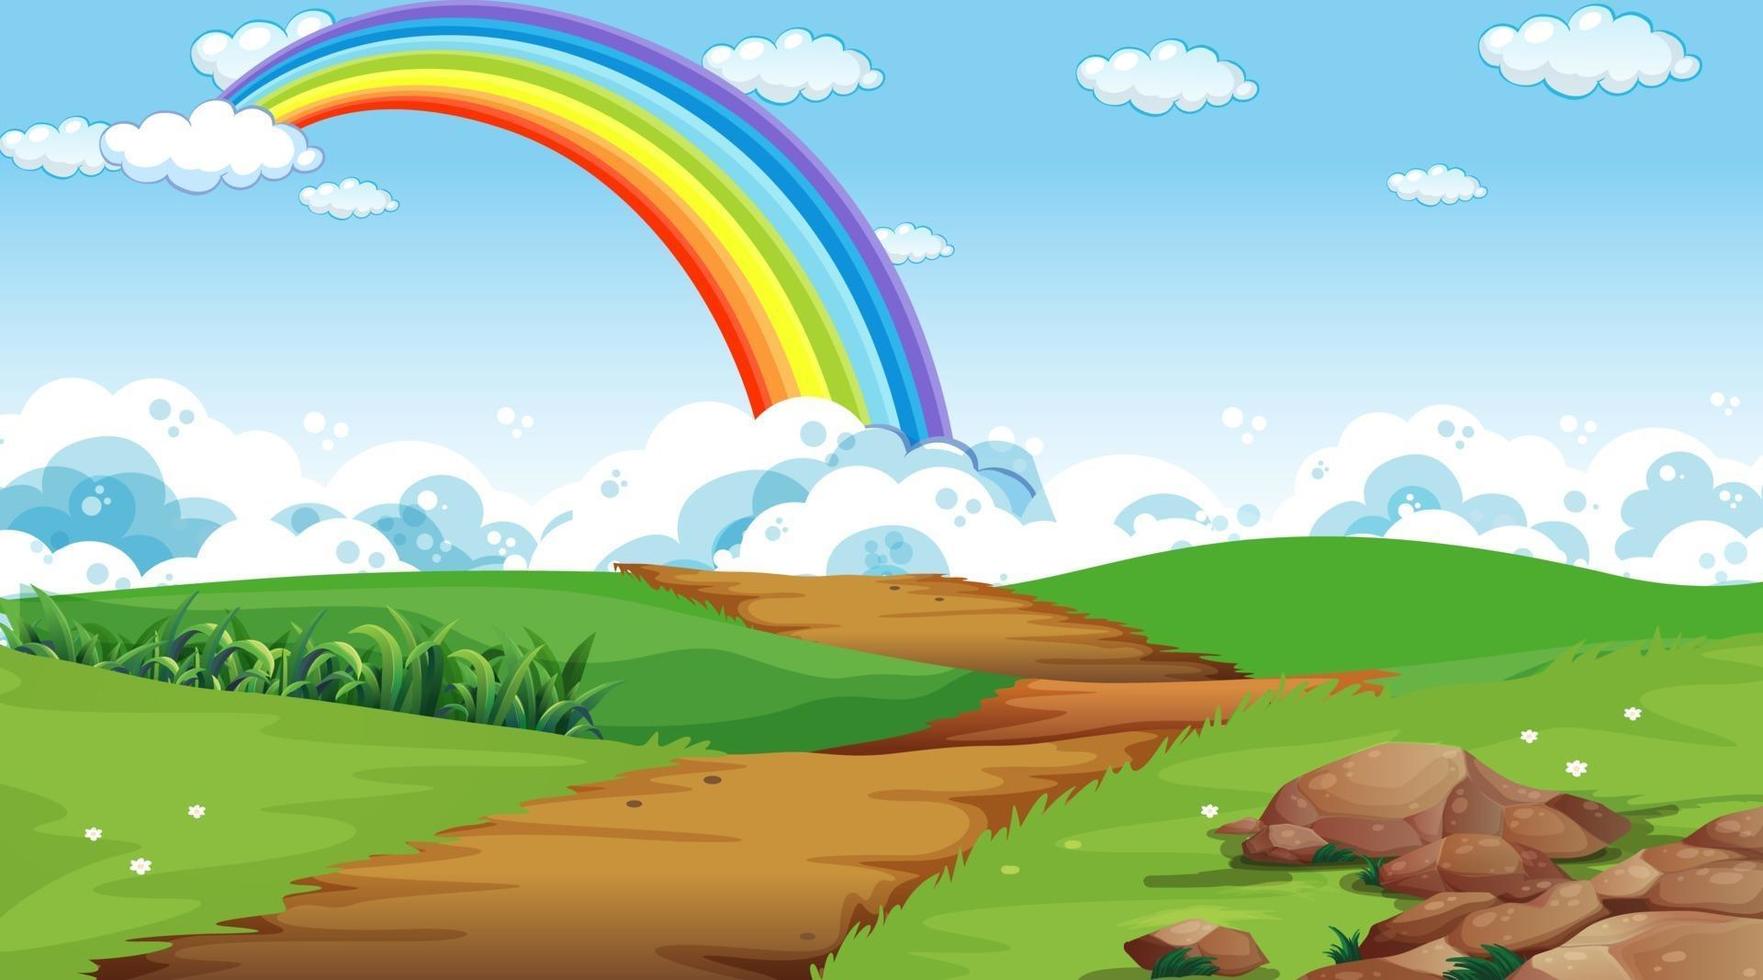 natuurpark scène achtergrond met regenboog in de lucht vector